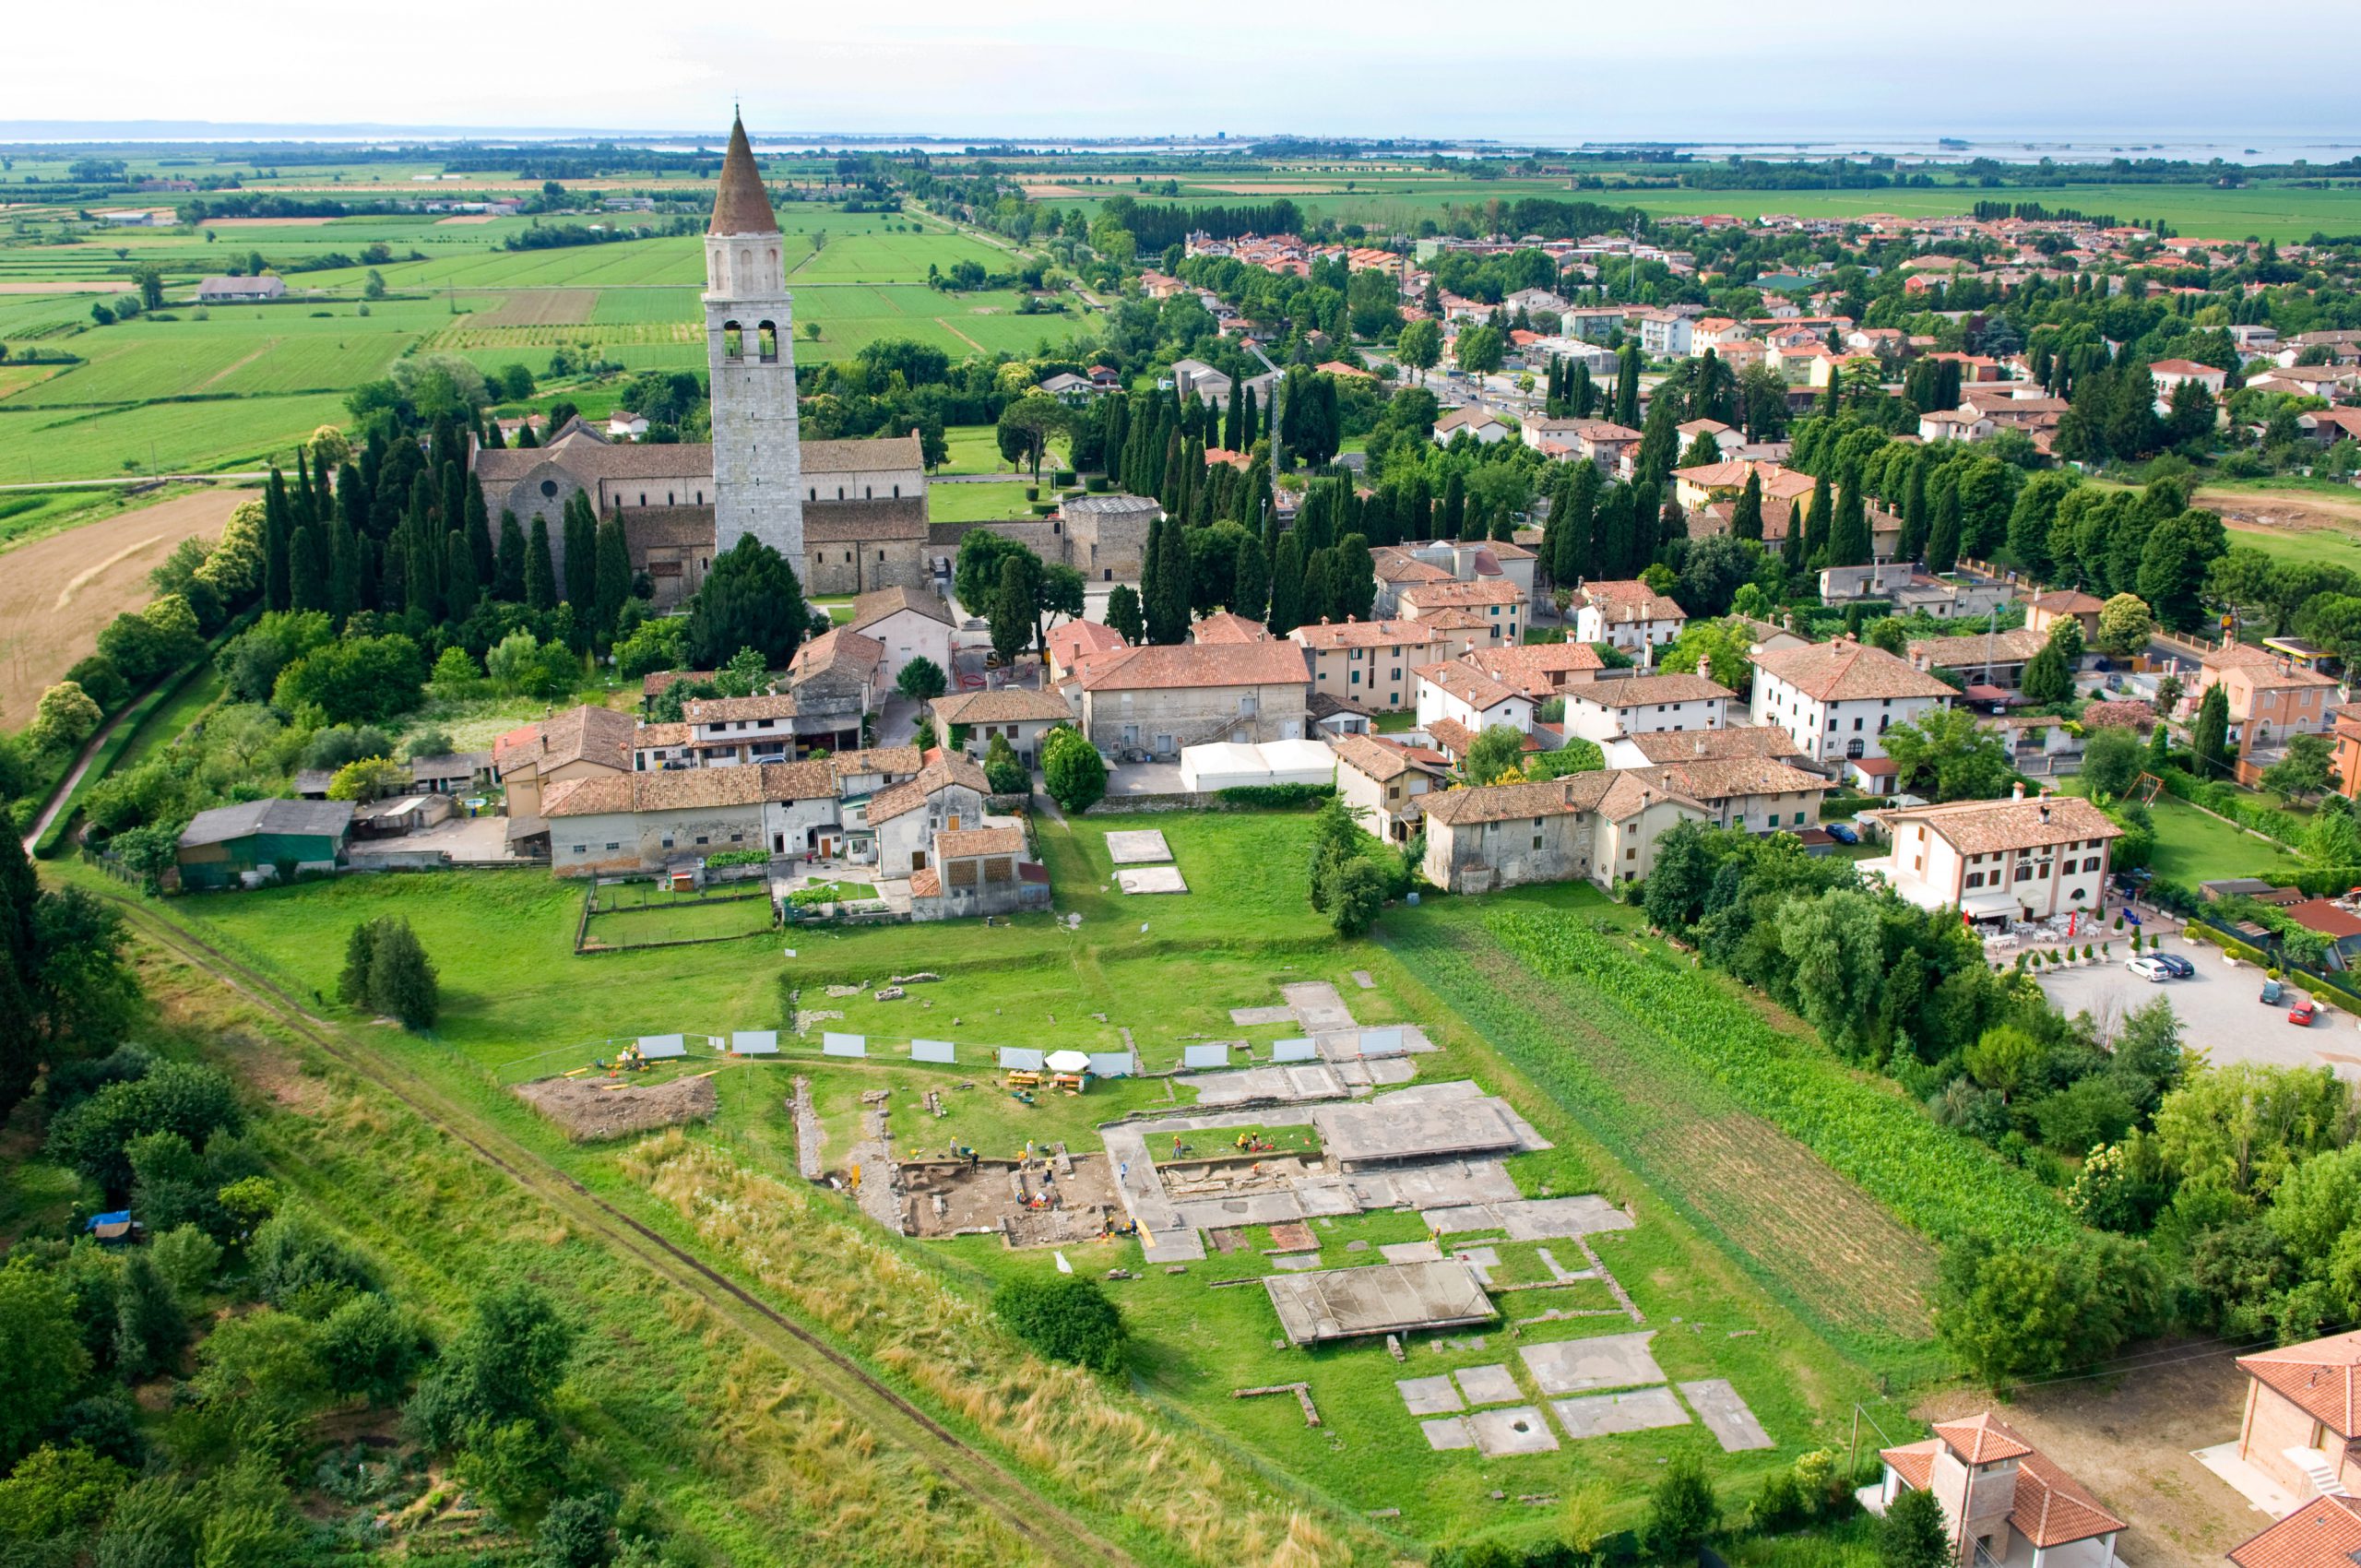 Cicloturismo e cultura insieme - visita le tracce dei romani ad Aquileia, la "seconda Roma"